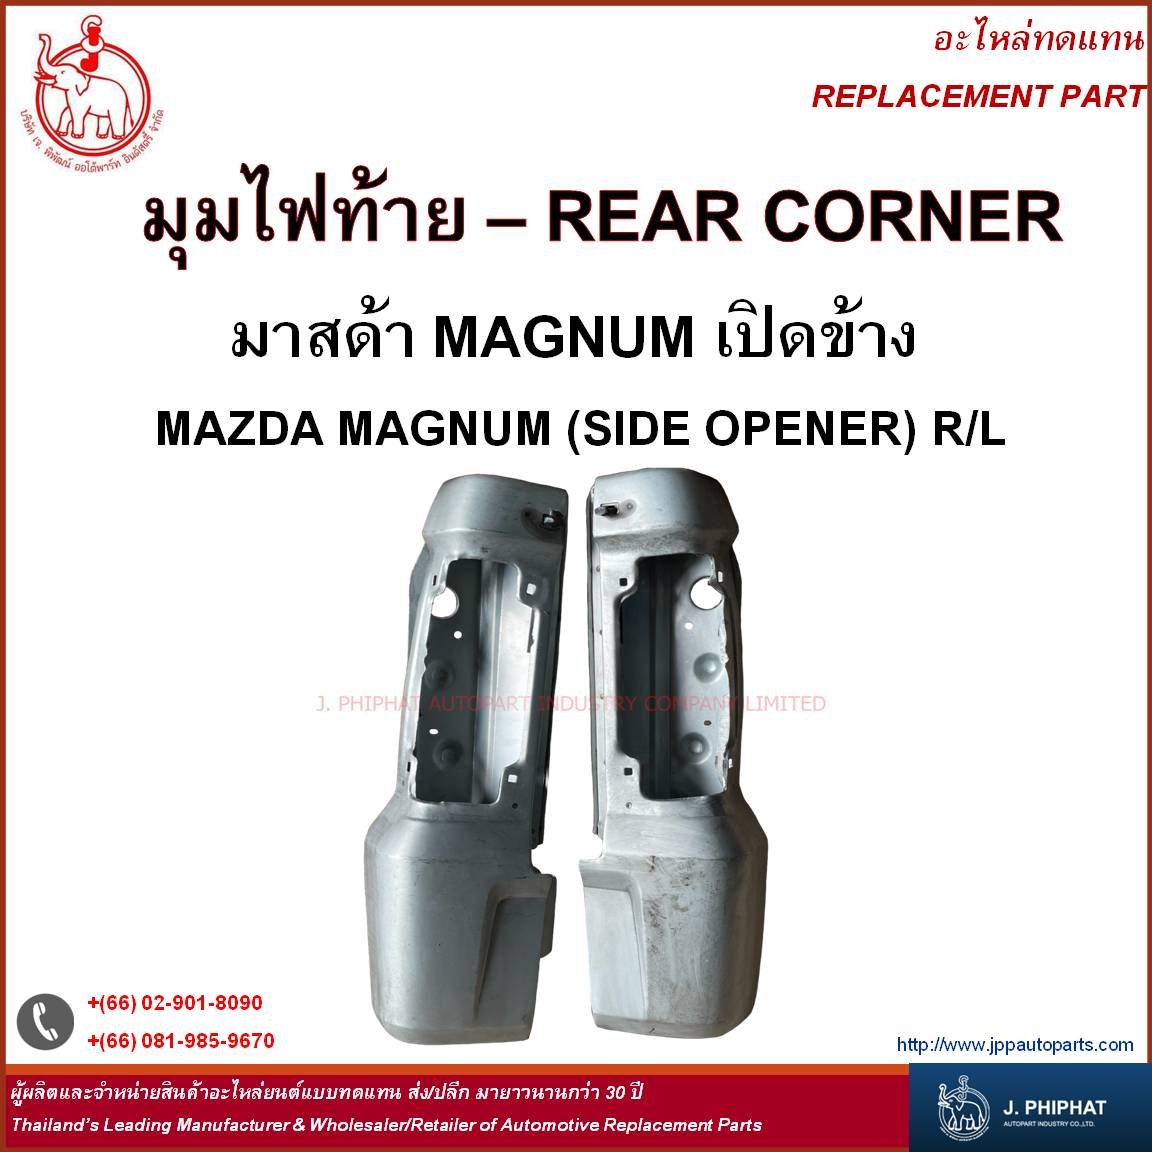 REAR CORNER - MAZDA MAGNUM (SIDE OPENER) (R/L)